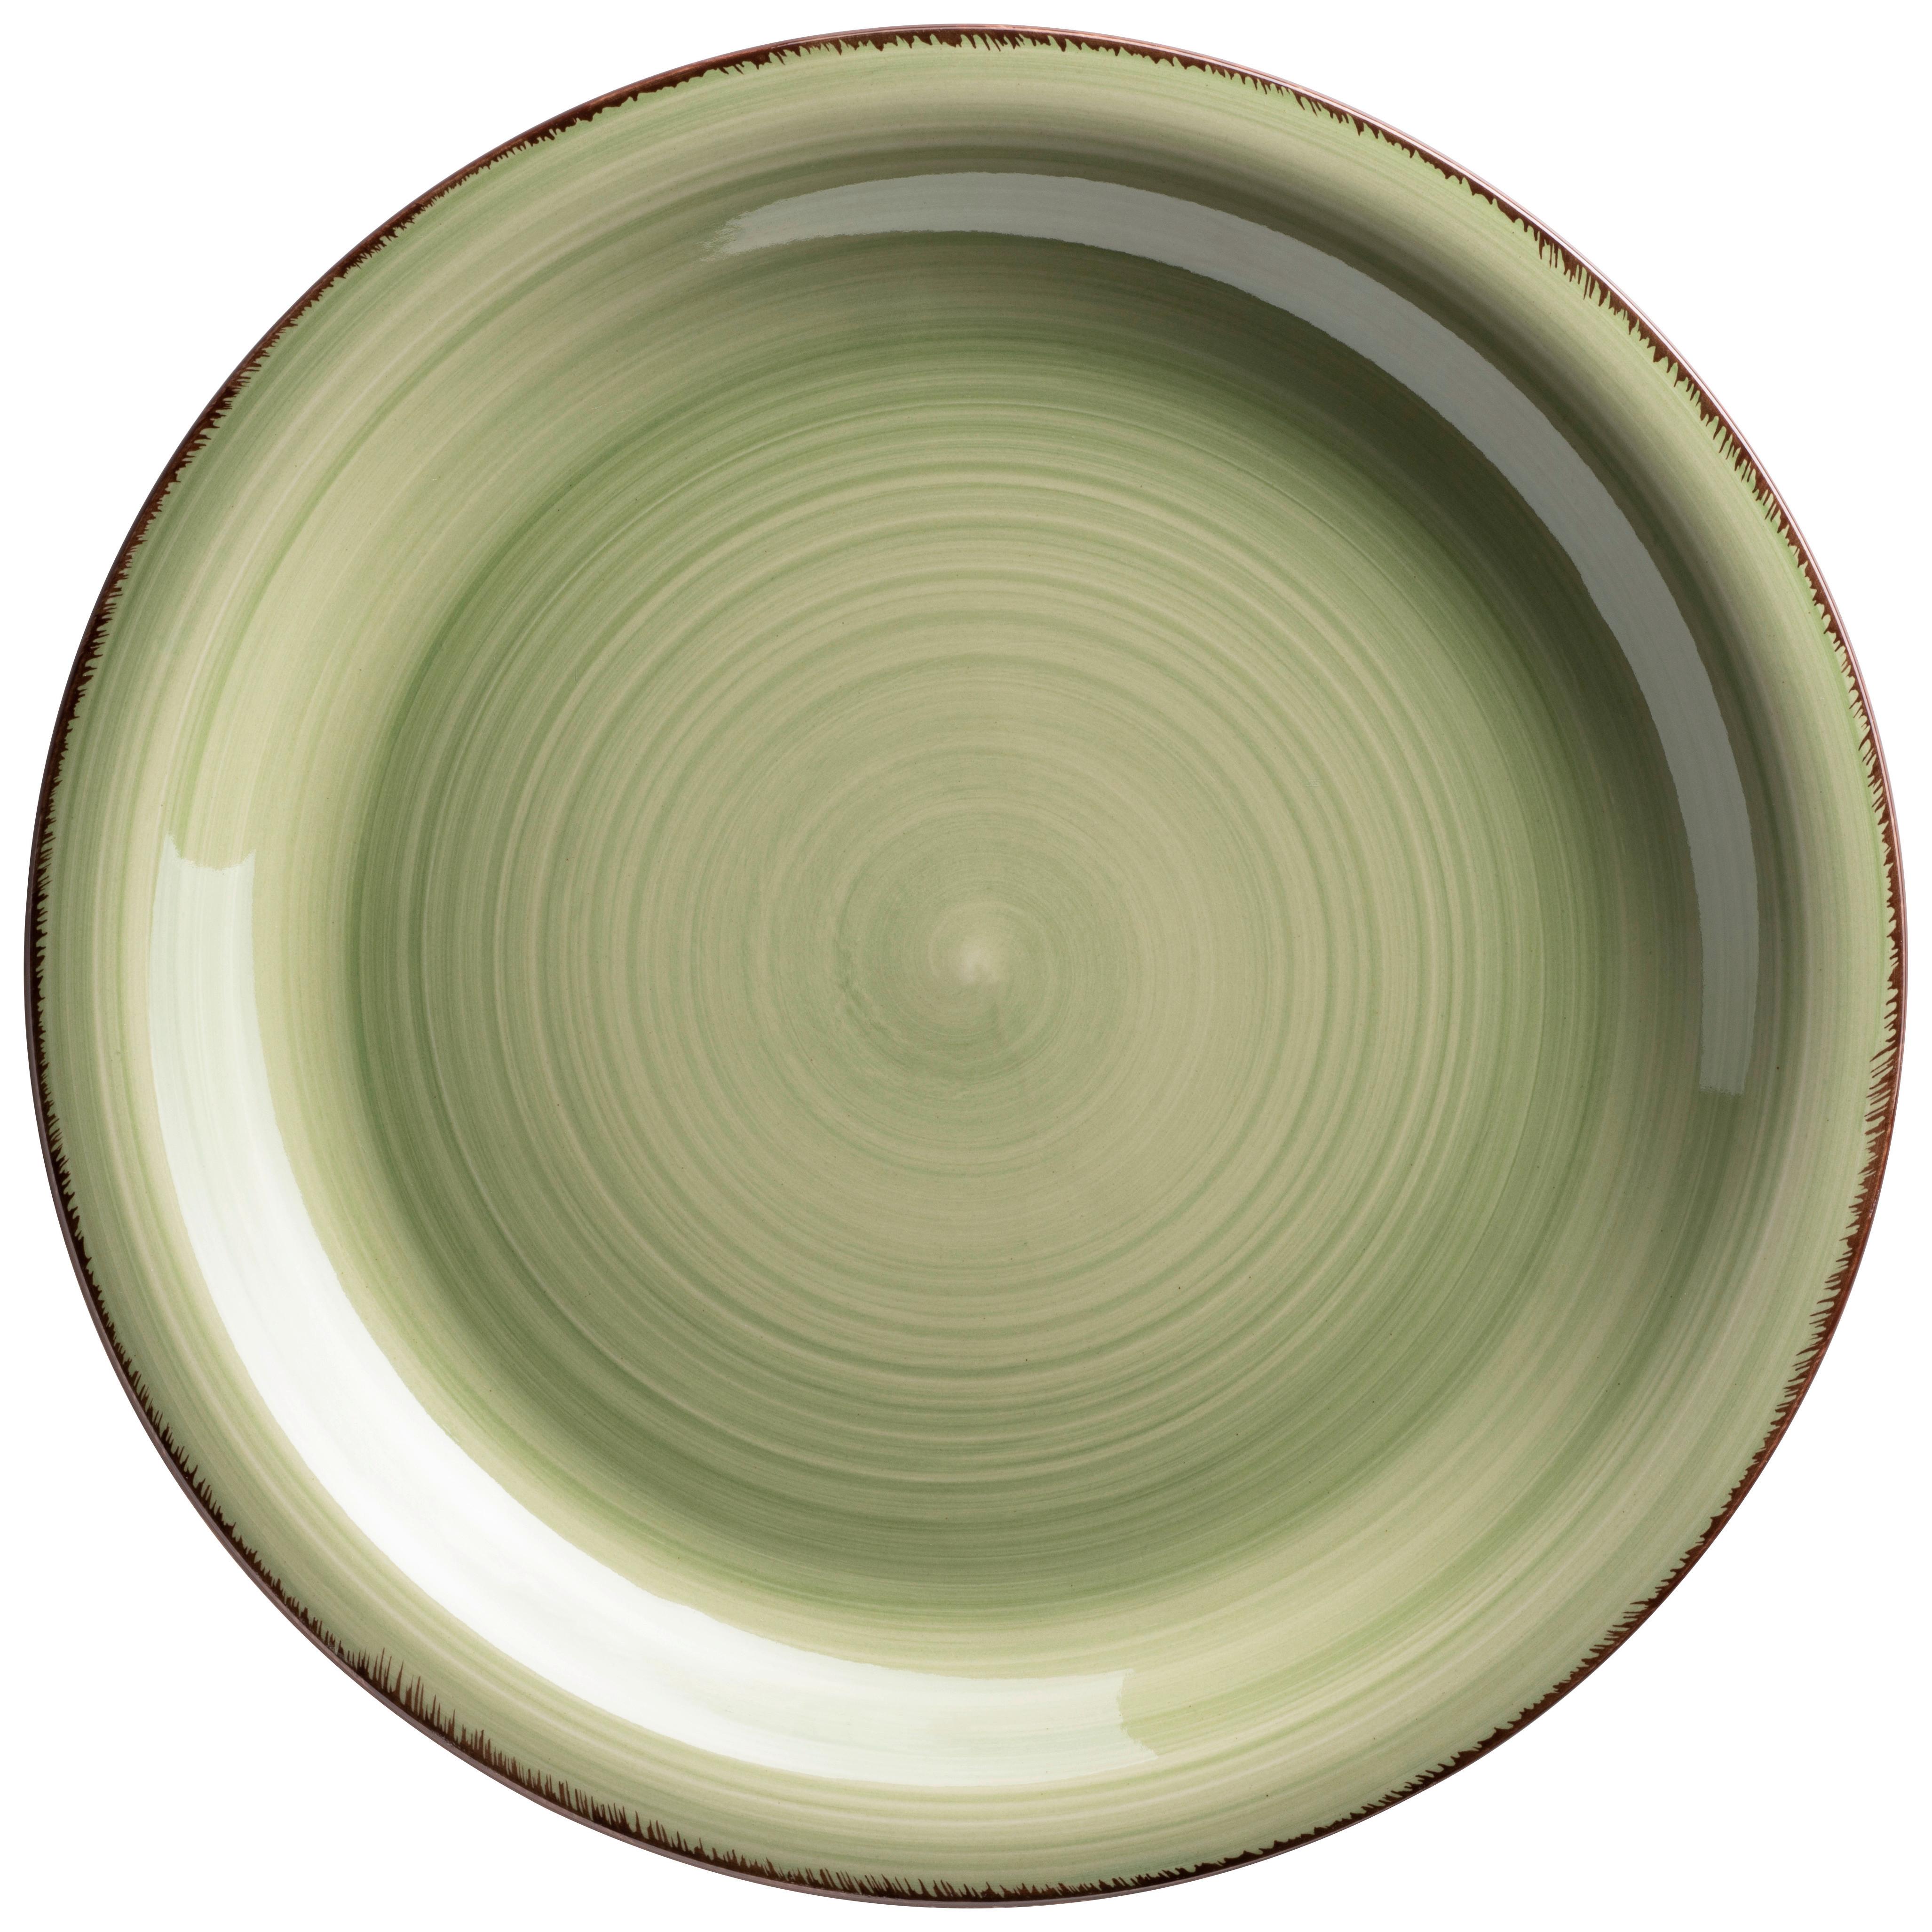 Tafelservice Lumaca aus Steingut, 12-teilig - Grün, Basics, Keramik - Mäser